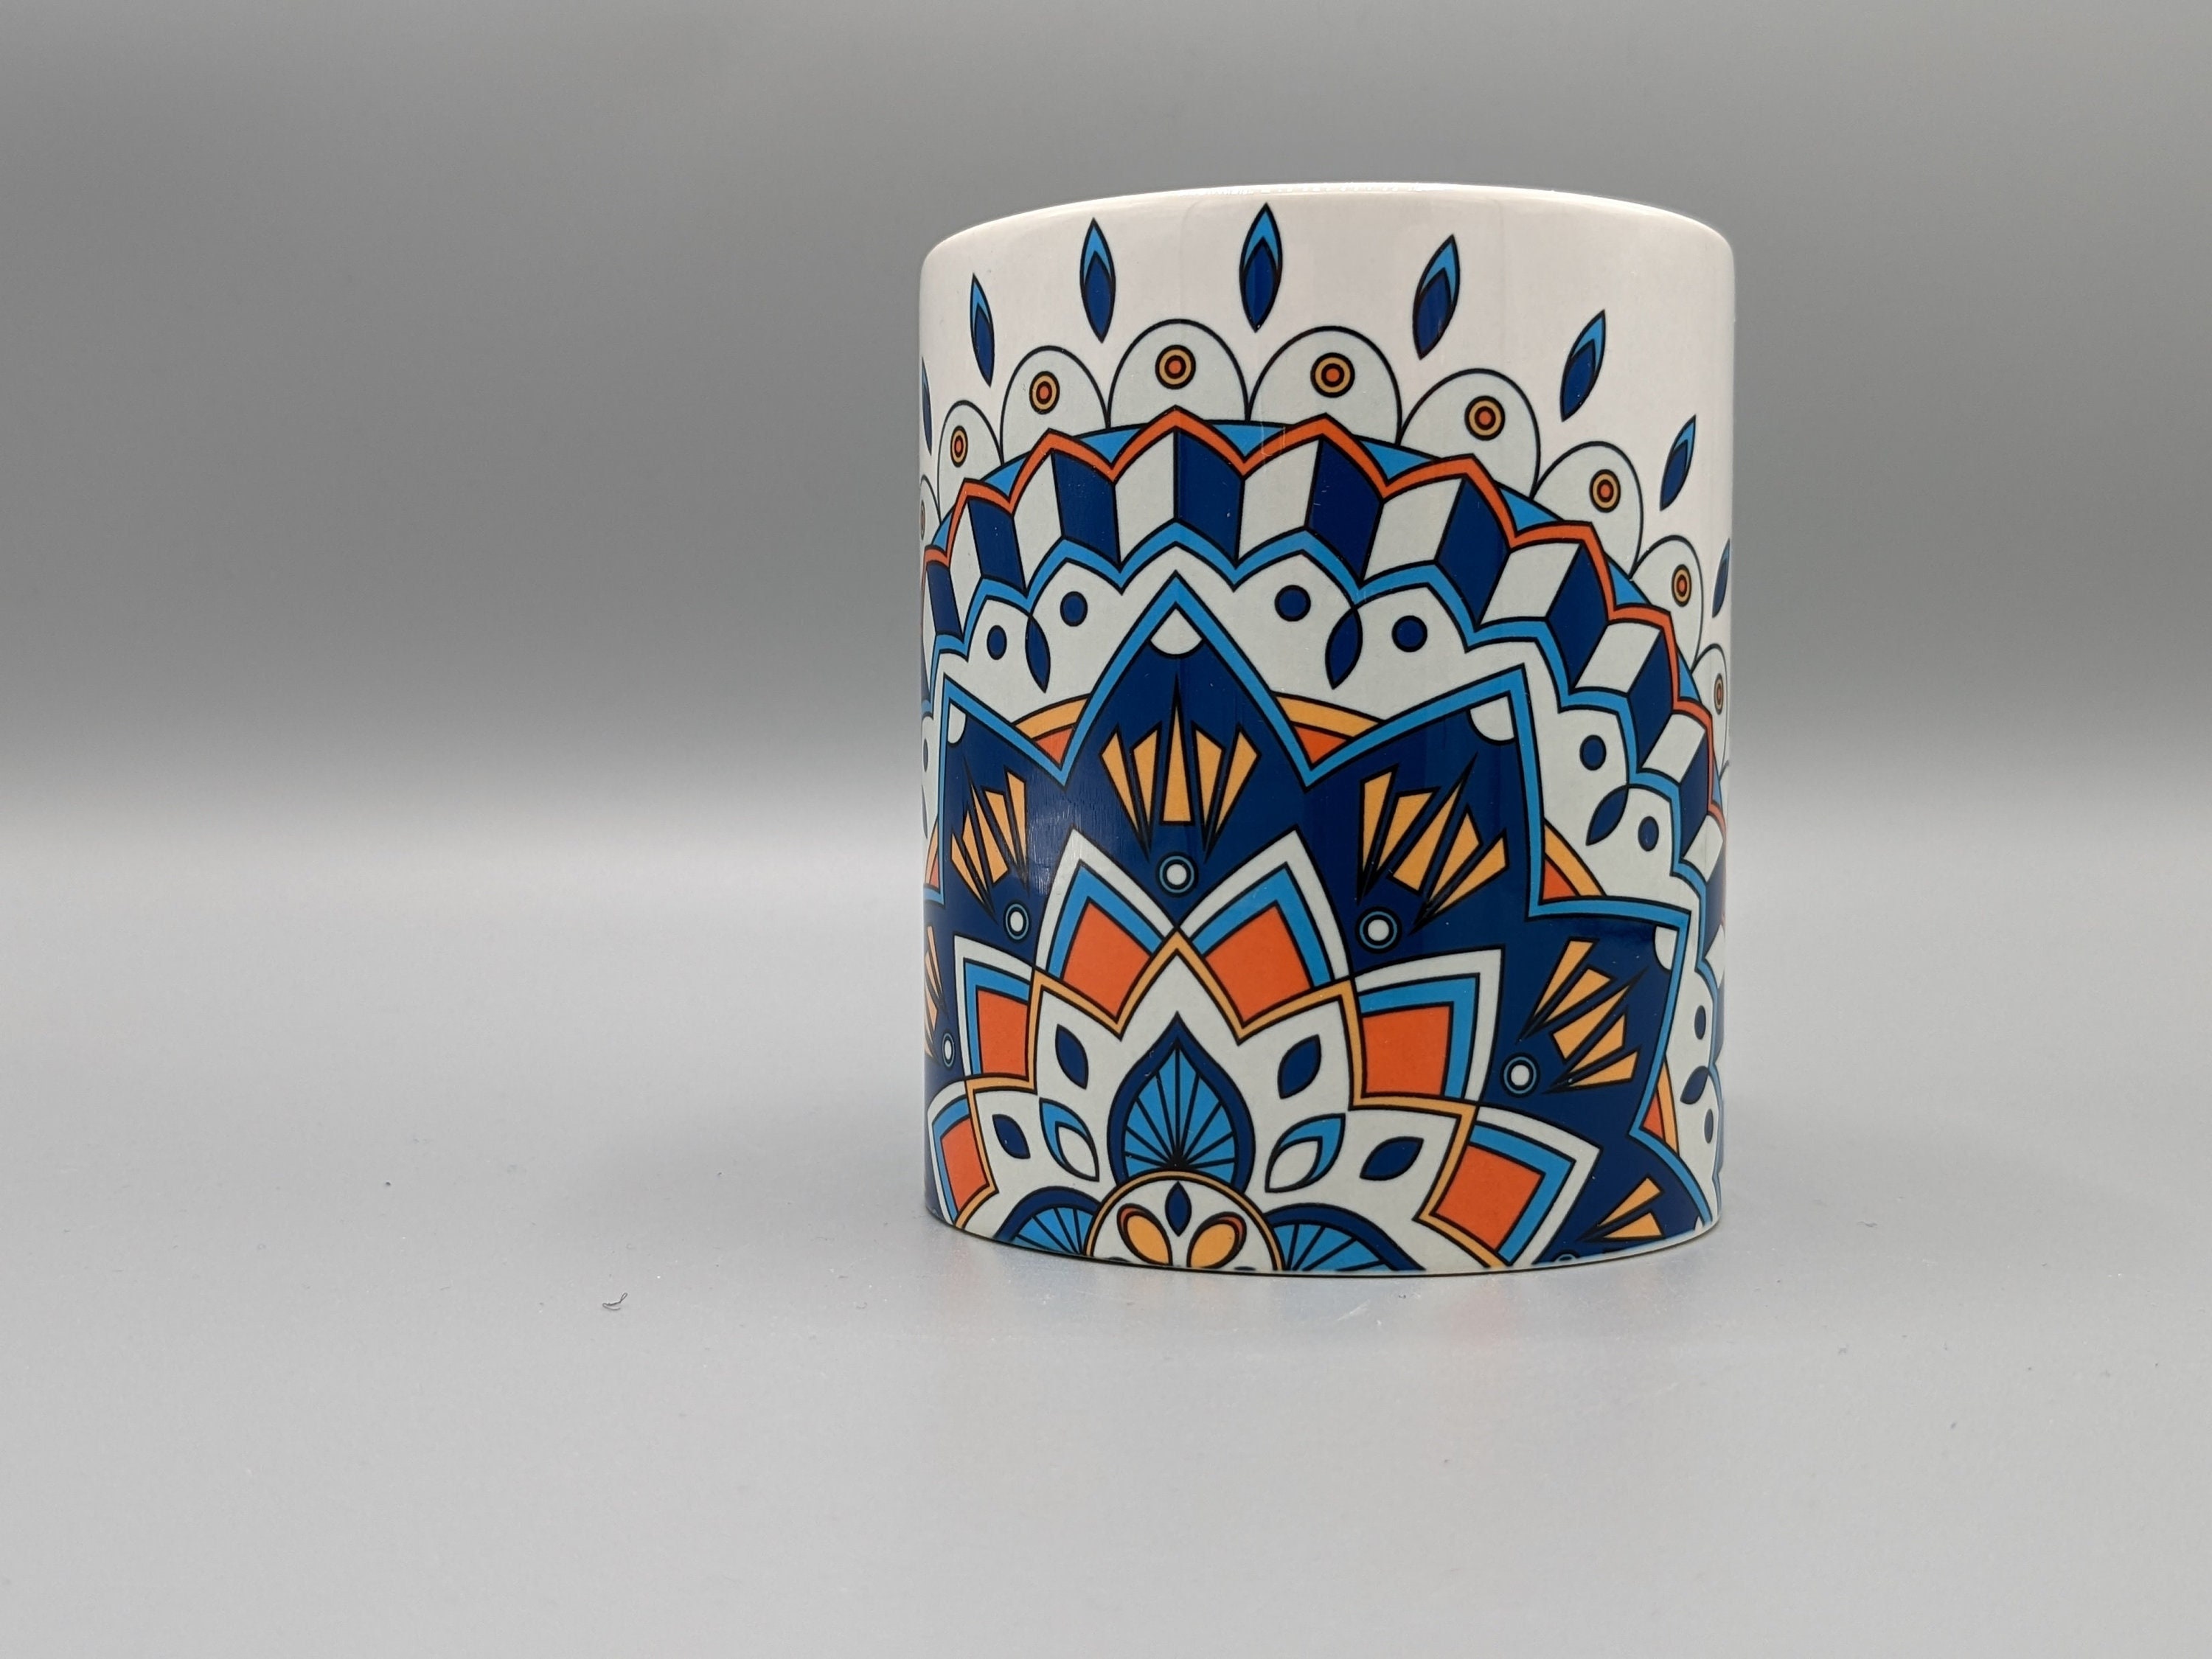 Mug Infuseur en Porcelaine avec Filtre et Couvercle Mandala Doré 400ml